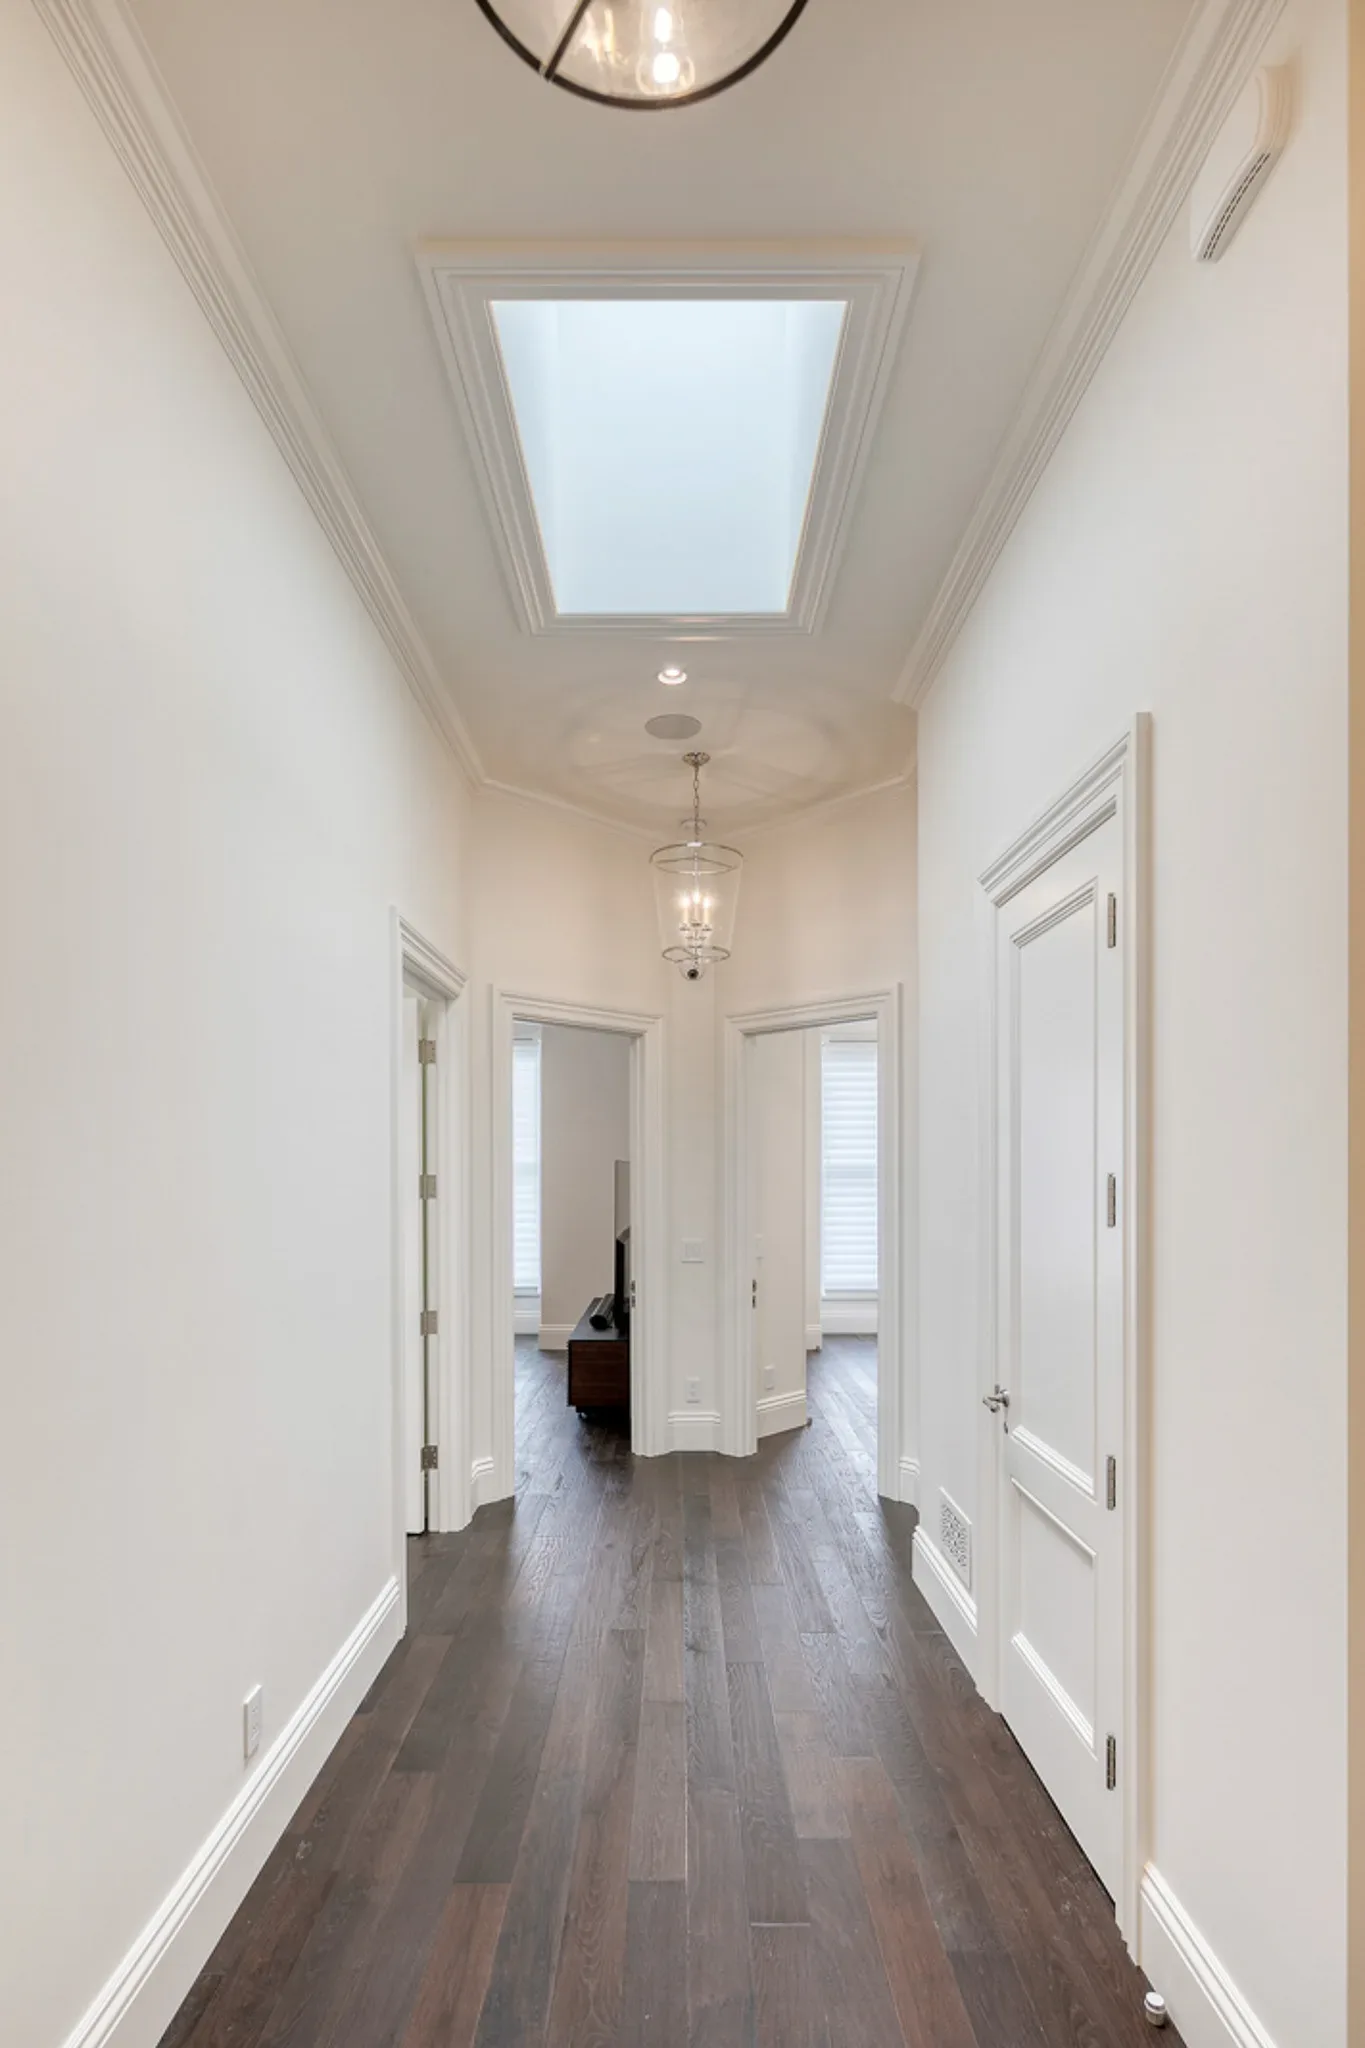 A hallway with hardwood floors and a skylight.